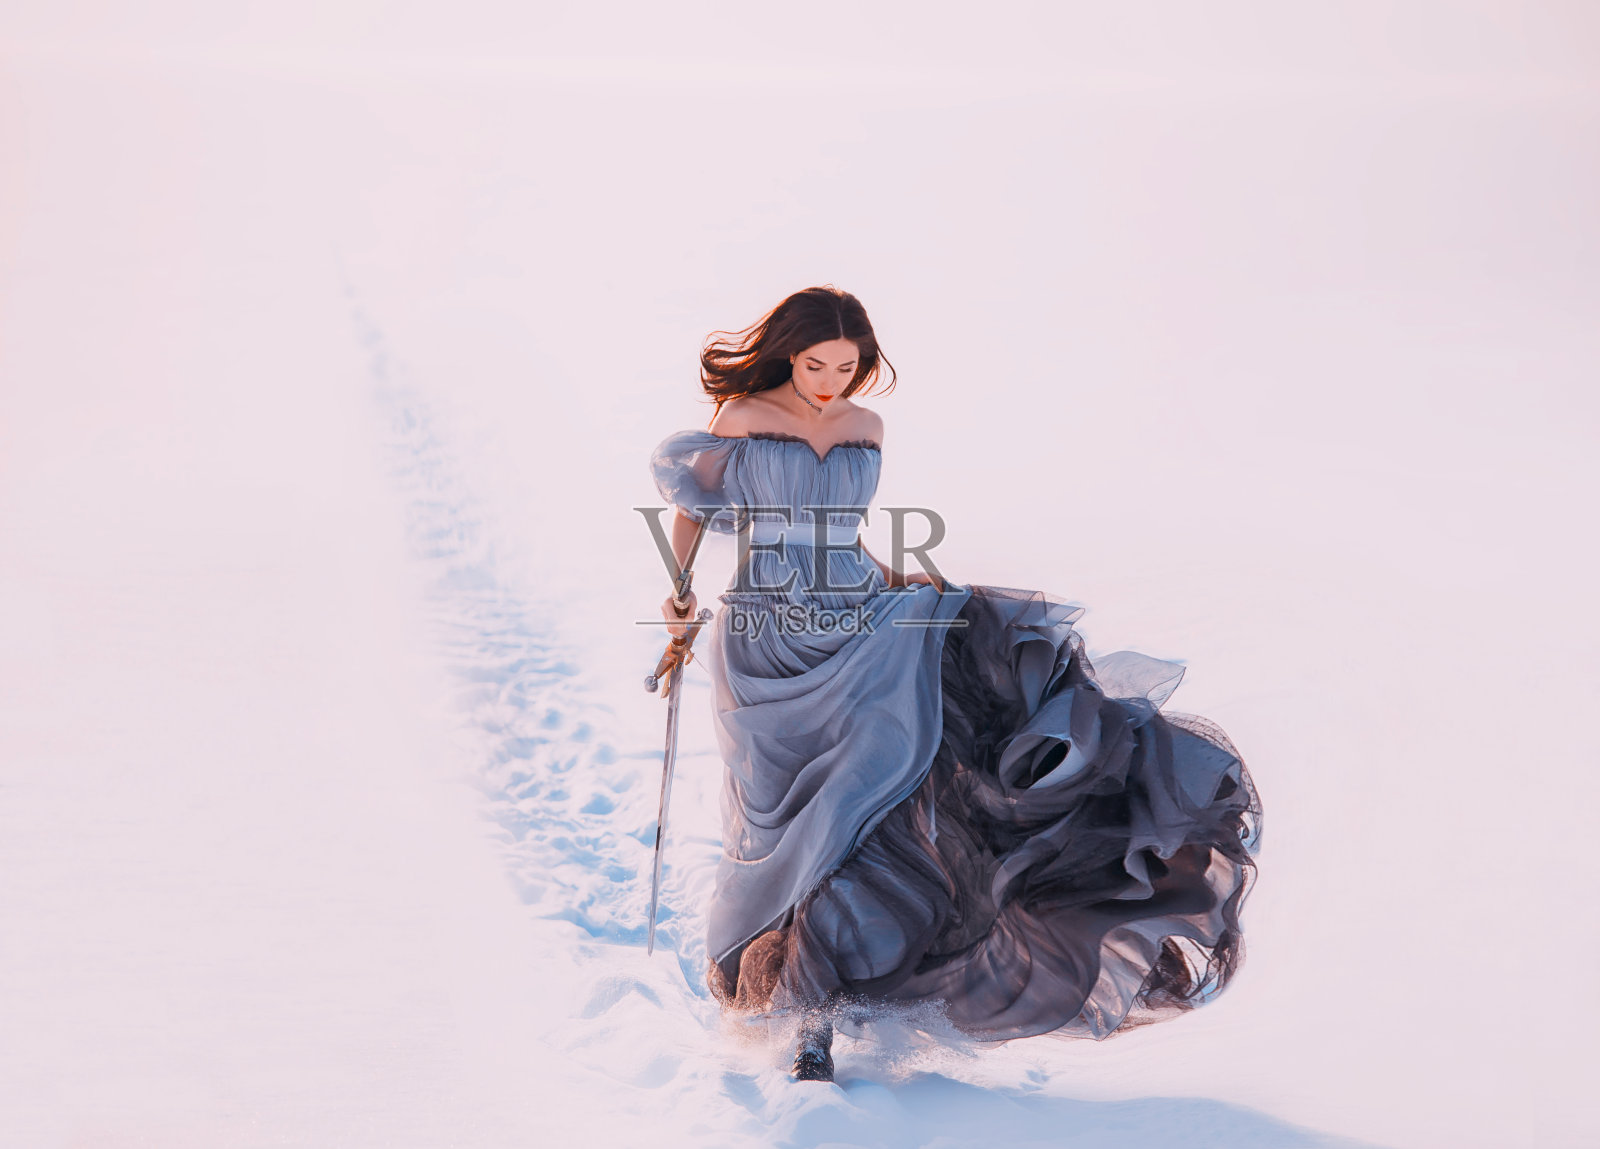 幻想孤独公主红发精灵走冬霜白雪的自然。年轻美女跑步。女王手持魔法剑。蓝色丝质长裙飘飘荡荡，随风飘动照片摄影图片